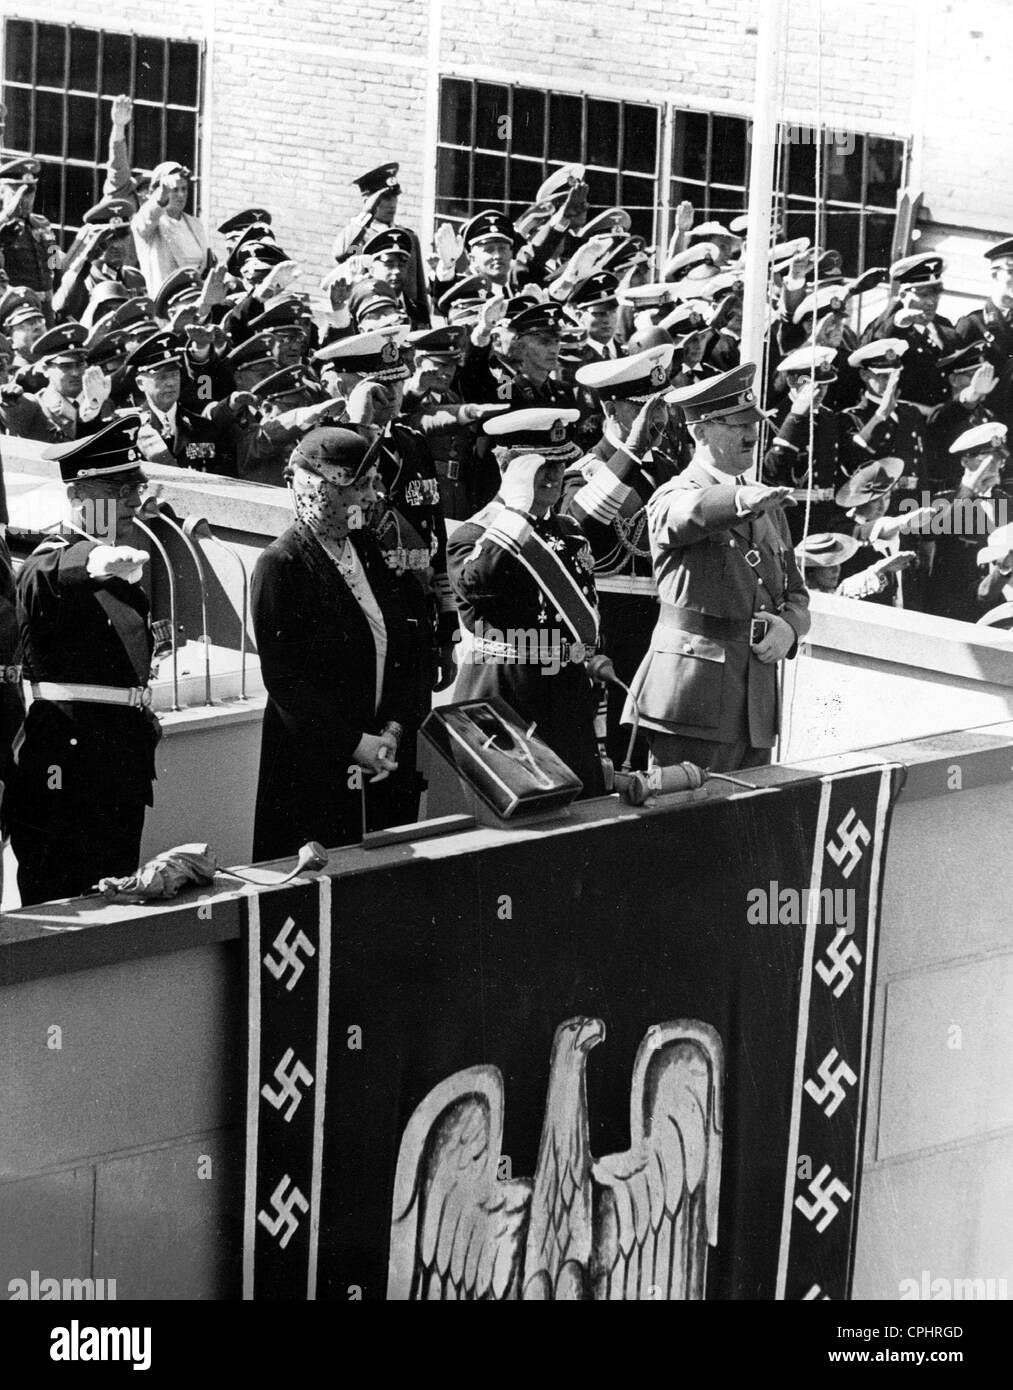 Vista de Adolf Hitler y los Nazis líderes navales en el lanzamiento de la Alemana HEAVY CRUISER "Prinz Eugen", 1938 (fotografía en B/N) Foto de stock